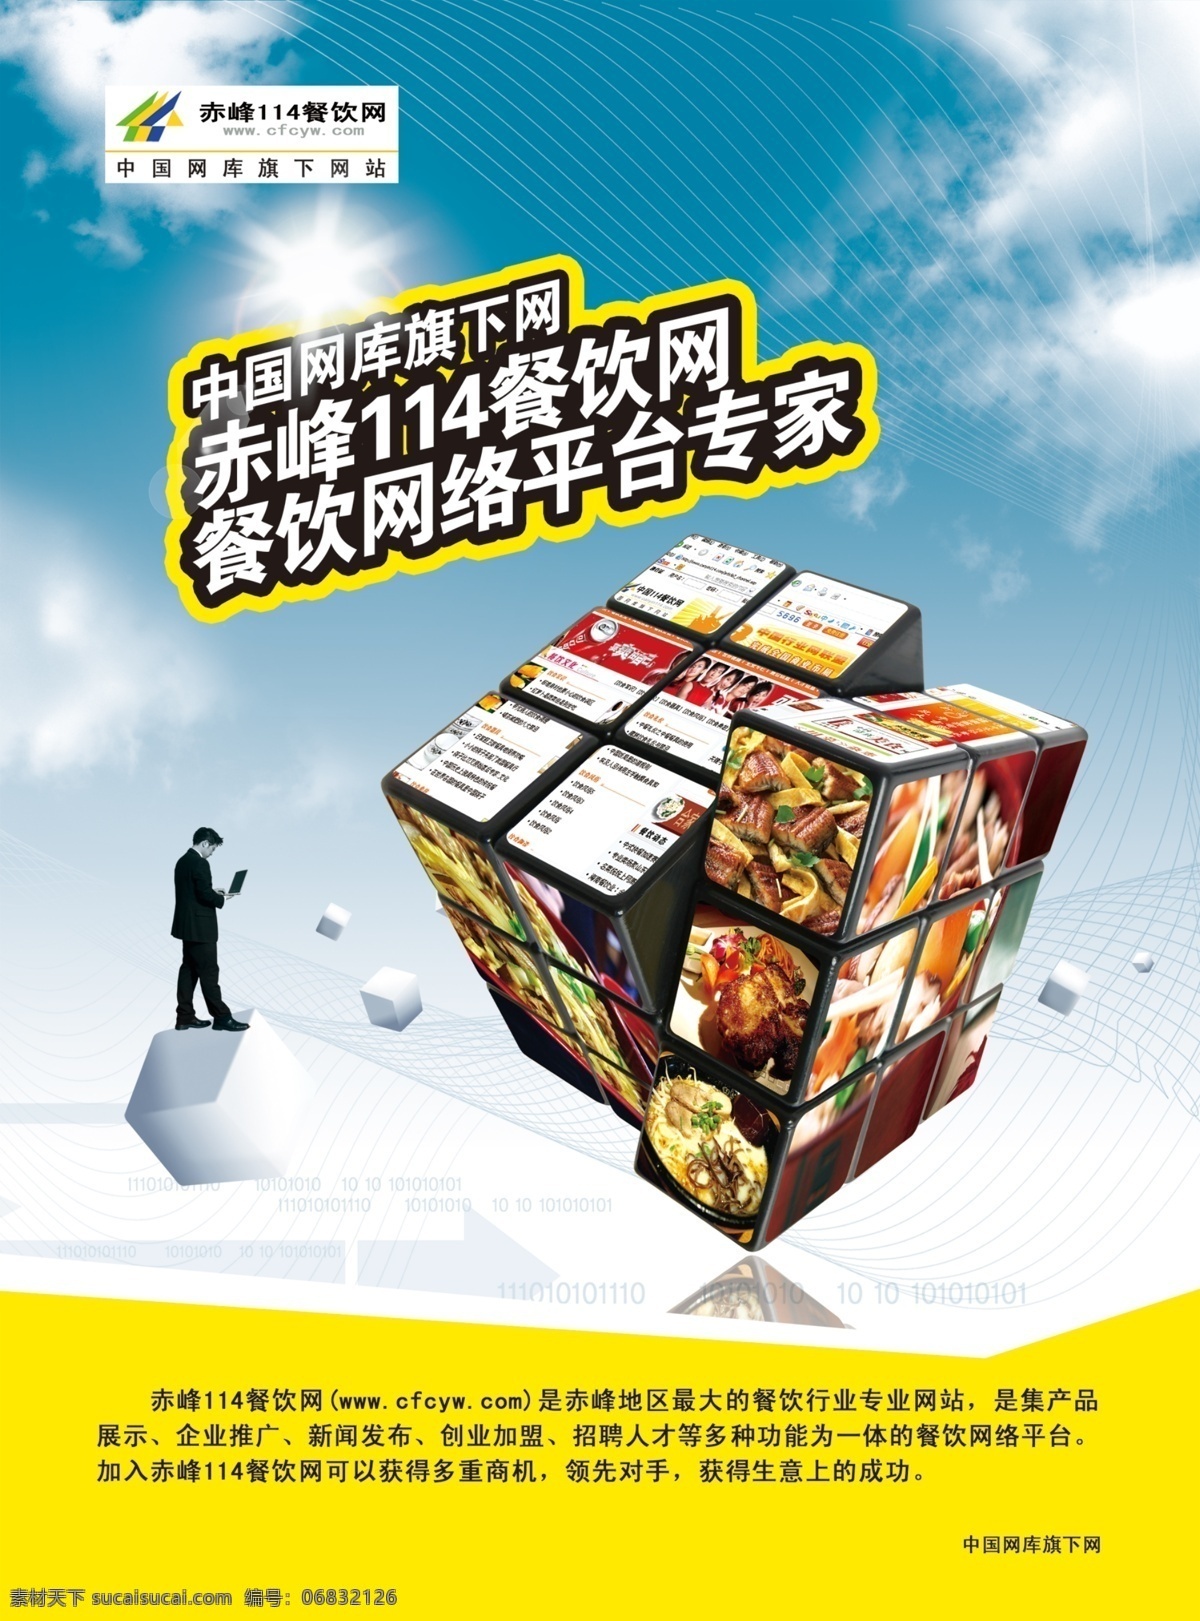 餐饮 中国网库 人物 天空 菜品 魔方 蓝色渐变 海报 广告设计模板 源文件